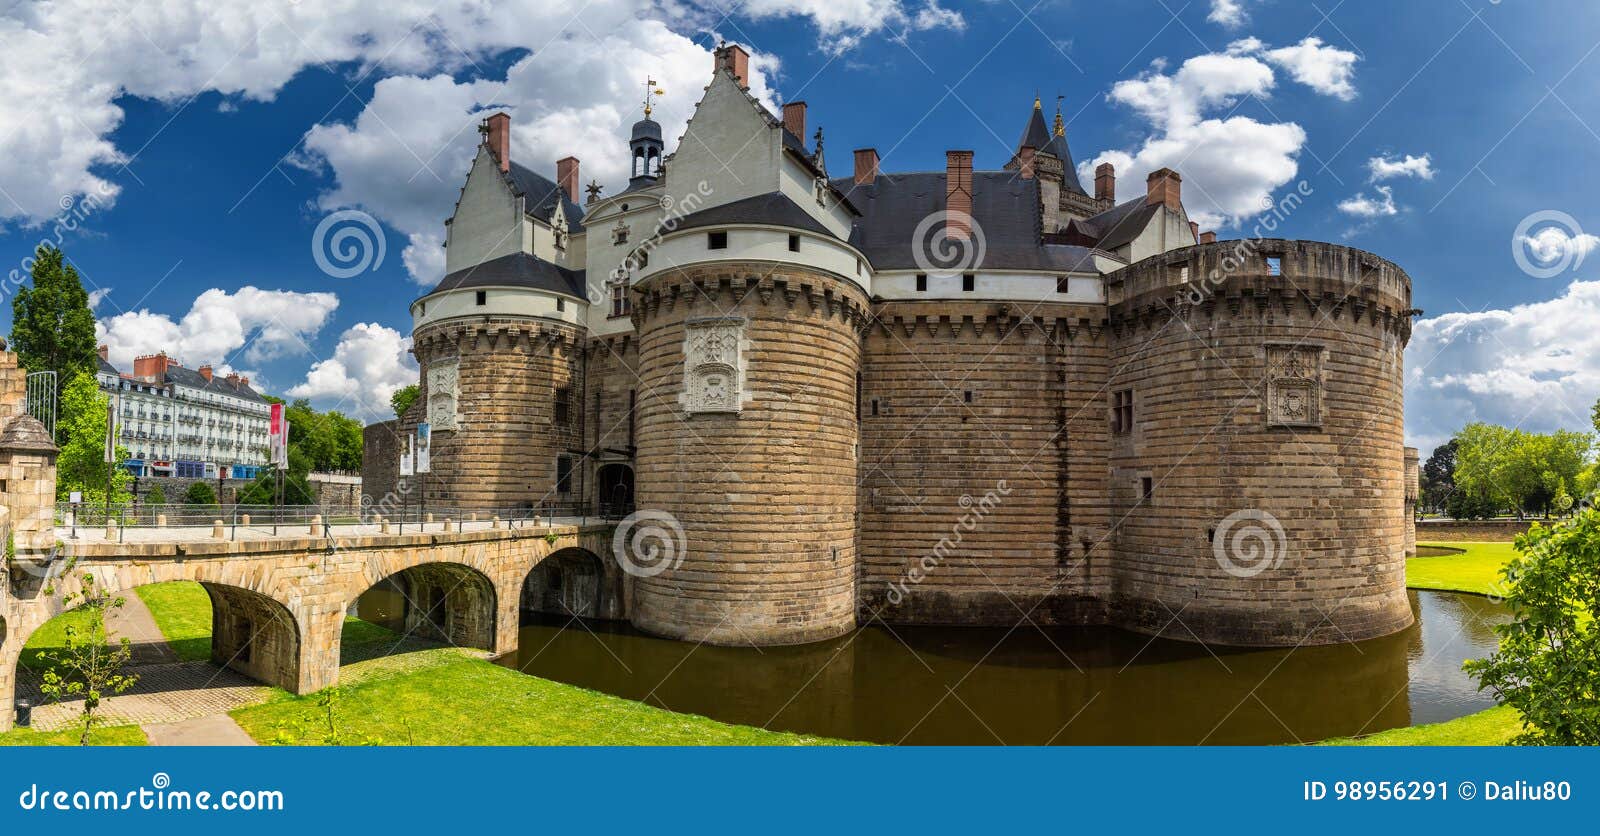 Castle των δουκών της Βρετάνης (Chateau des Ducs de Βρετάνη) ι. Castle των δουκών της Βρετάνης (Chateau des Ducs de Βρετάνη) στη Νάντη, Γαλλία